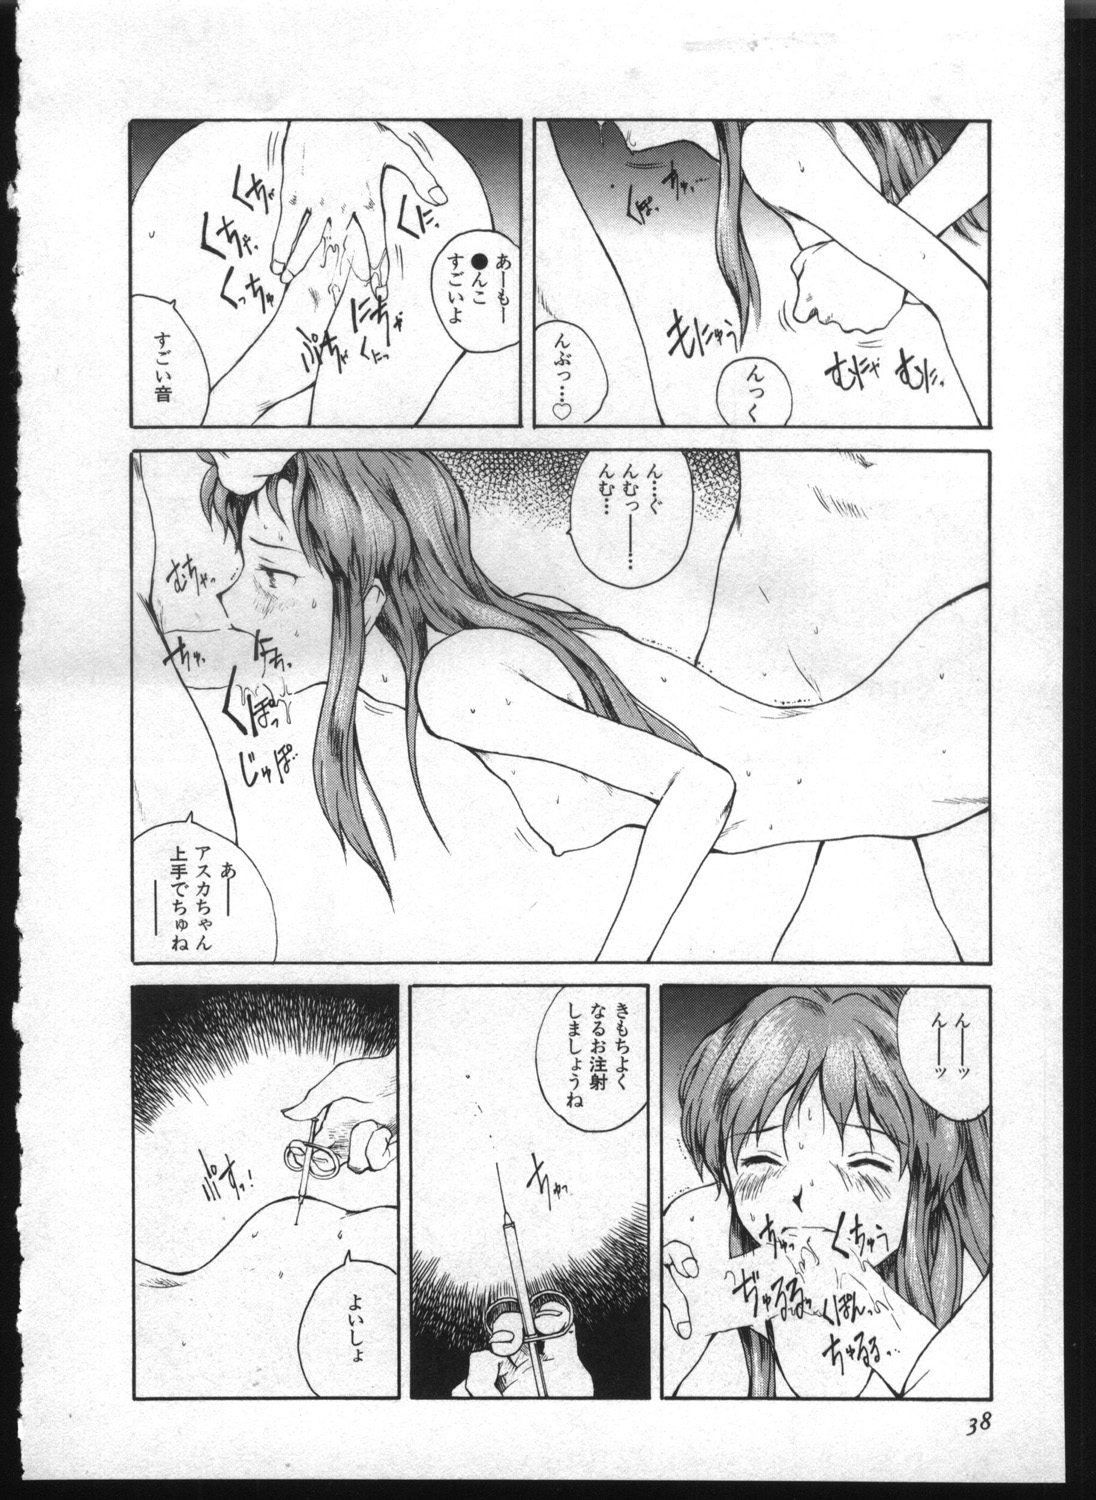 [Anthology] Shitsurakuen 7 | Paradise Lost 7 (Neon Genesis Evangelion) page 36 full